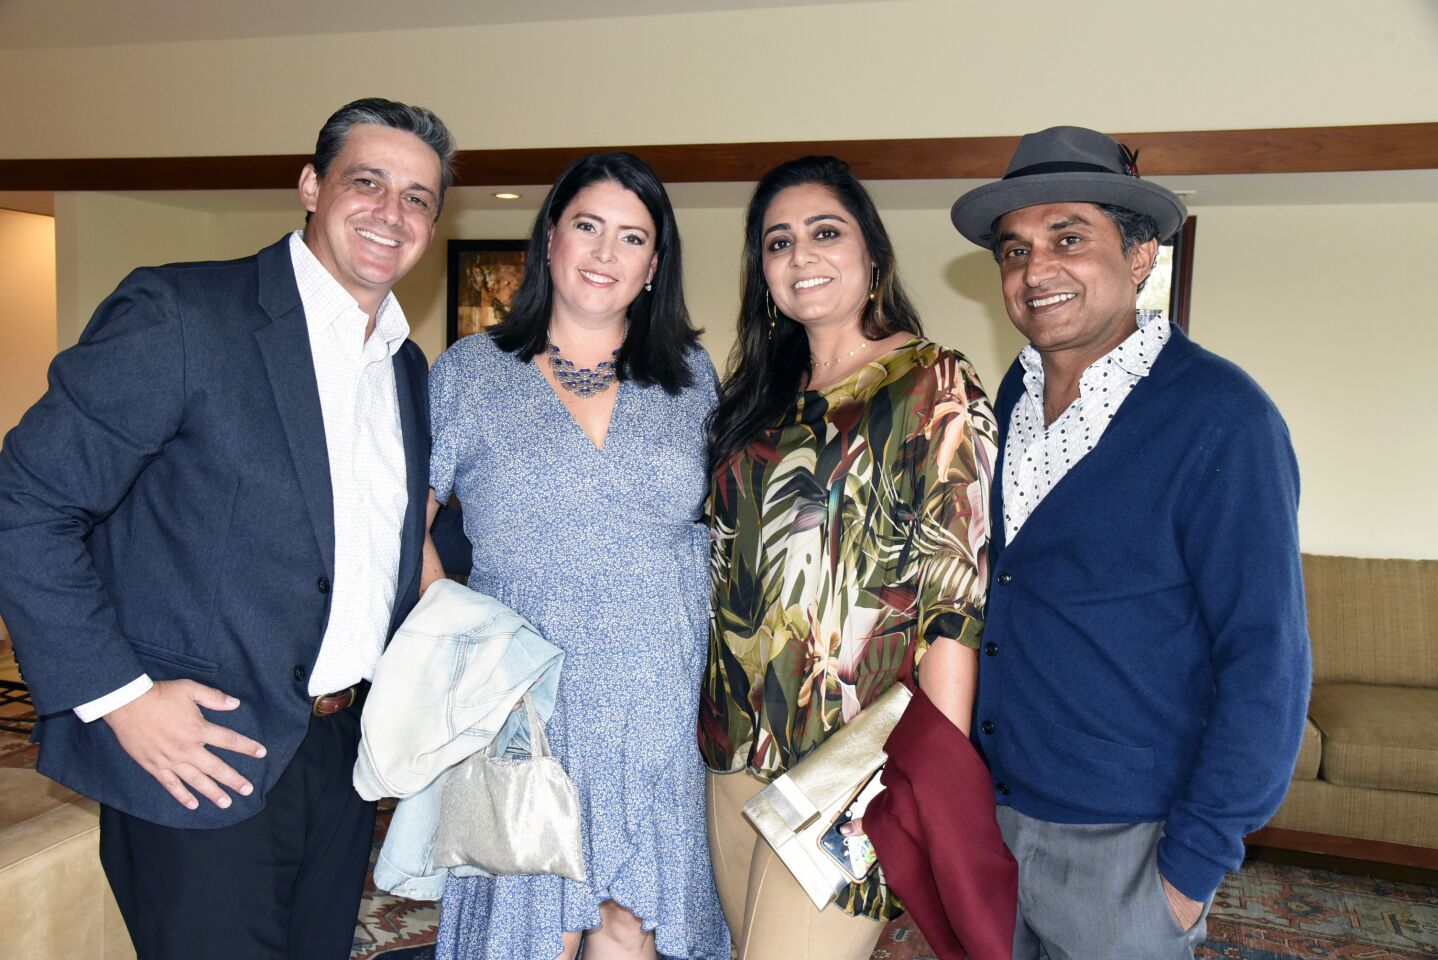 Chris and Cheryl Salmen, Anatam Kaur and Kamal Sahota